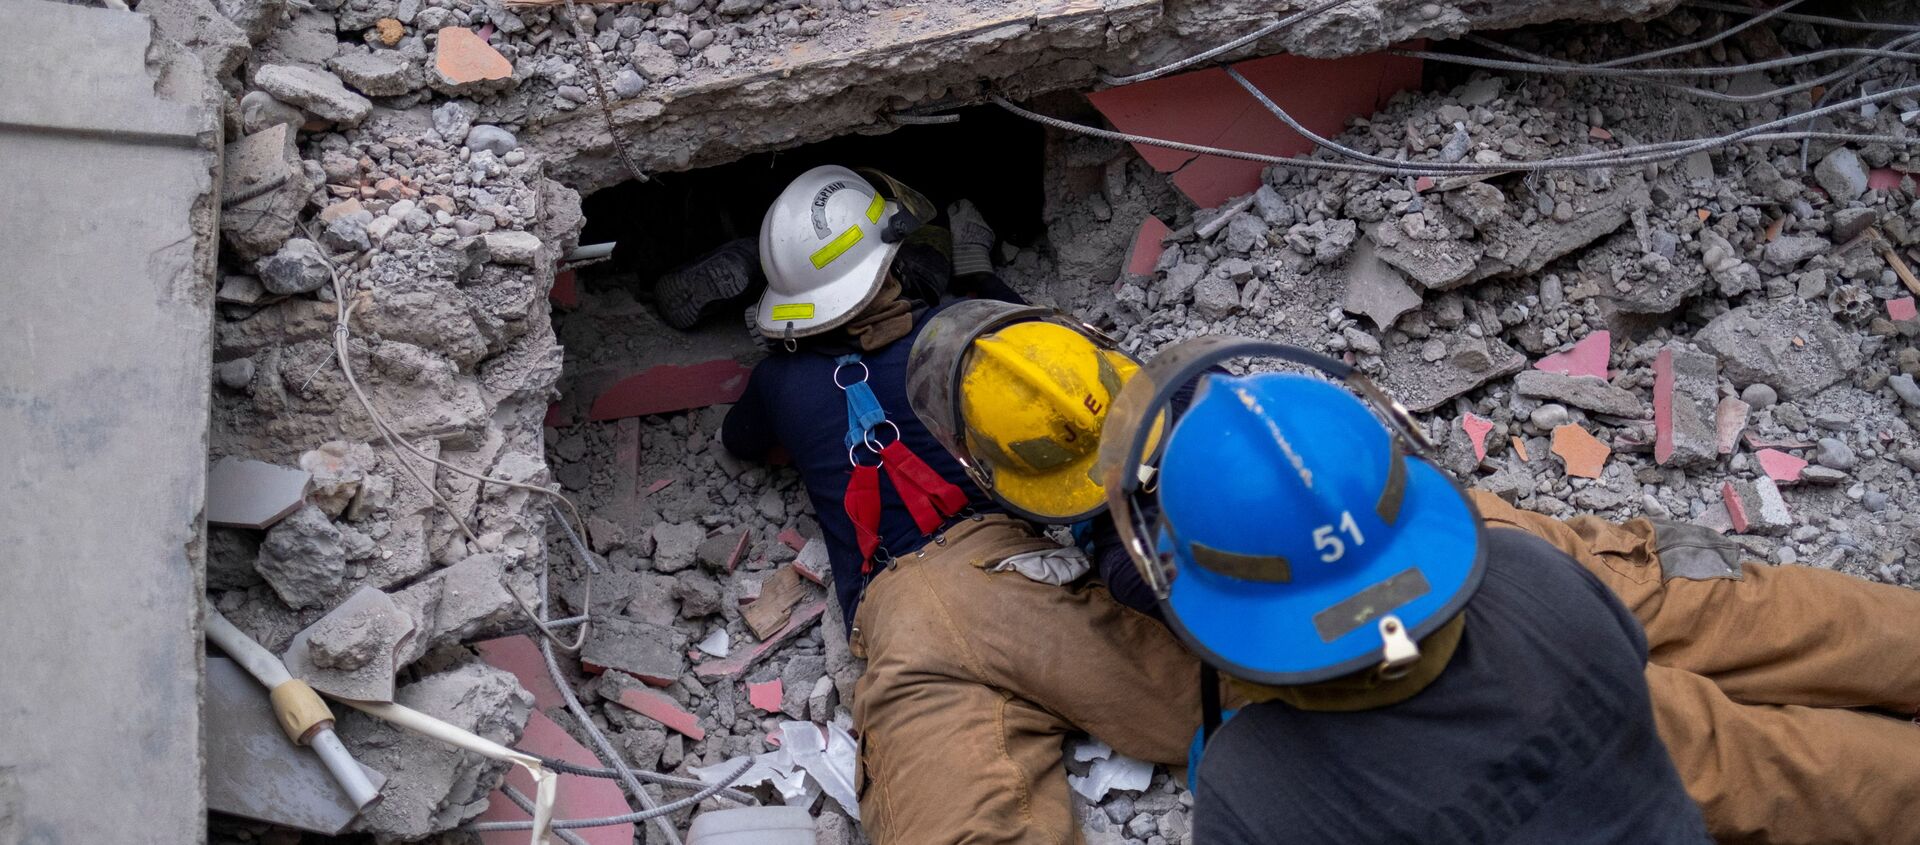 Поиск выживших под обломками разрушенного отеля после землетрясения магнитудой 7,2 в Ле-Ке, Гаити - Sputnik 日本, 1920, 18.08.2021